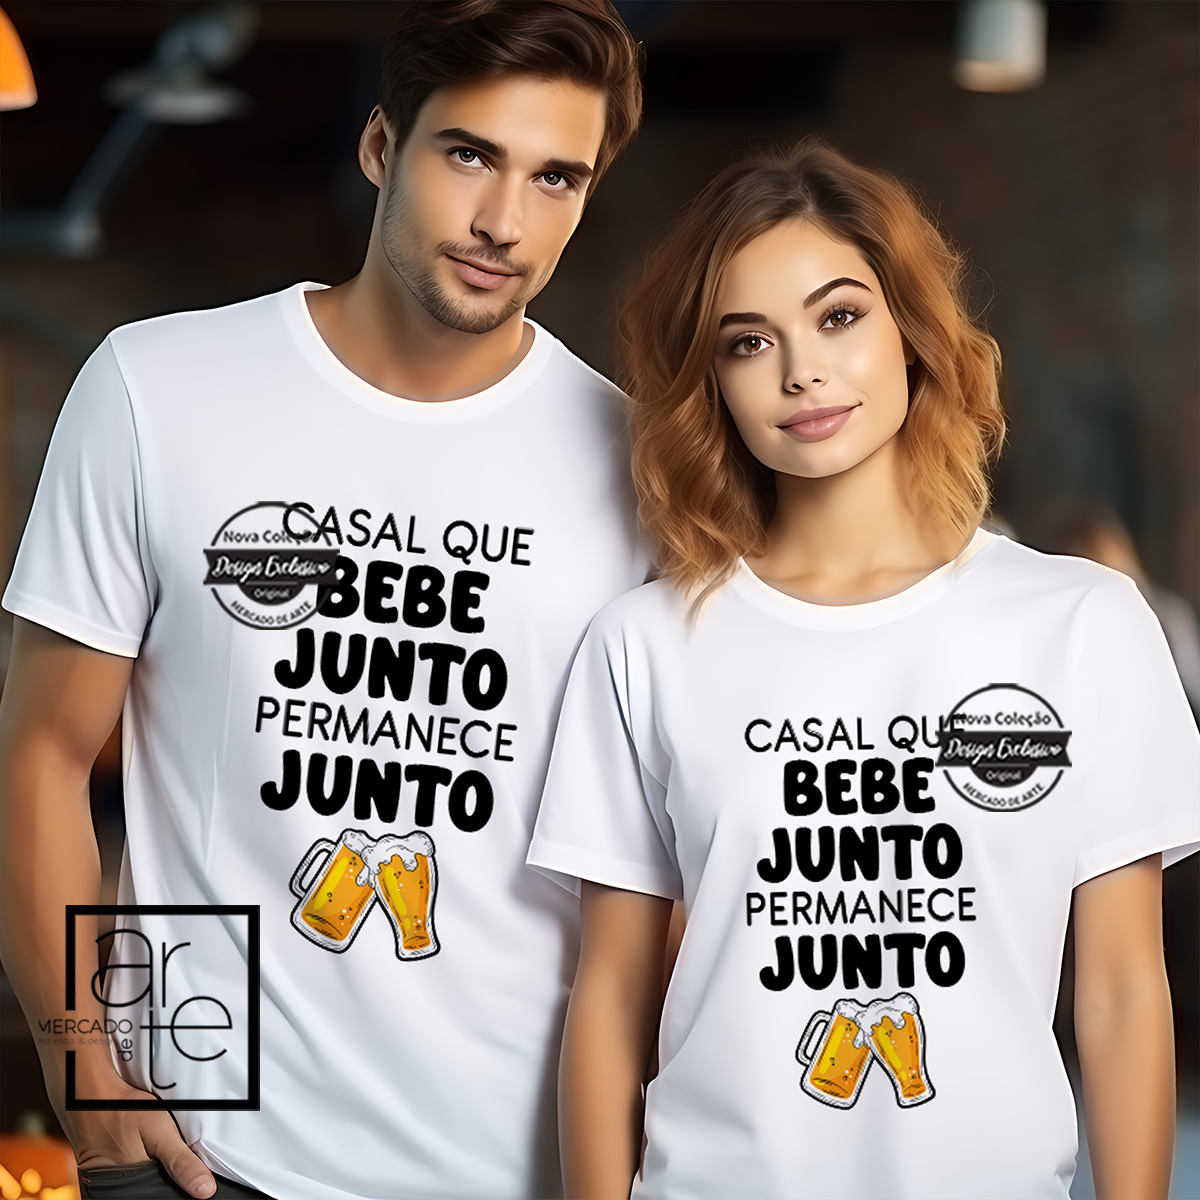 T-shirt "Casal que bebe junto, permanece junto"